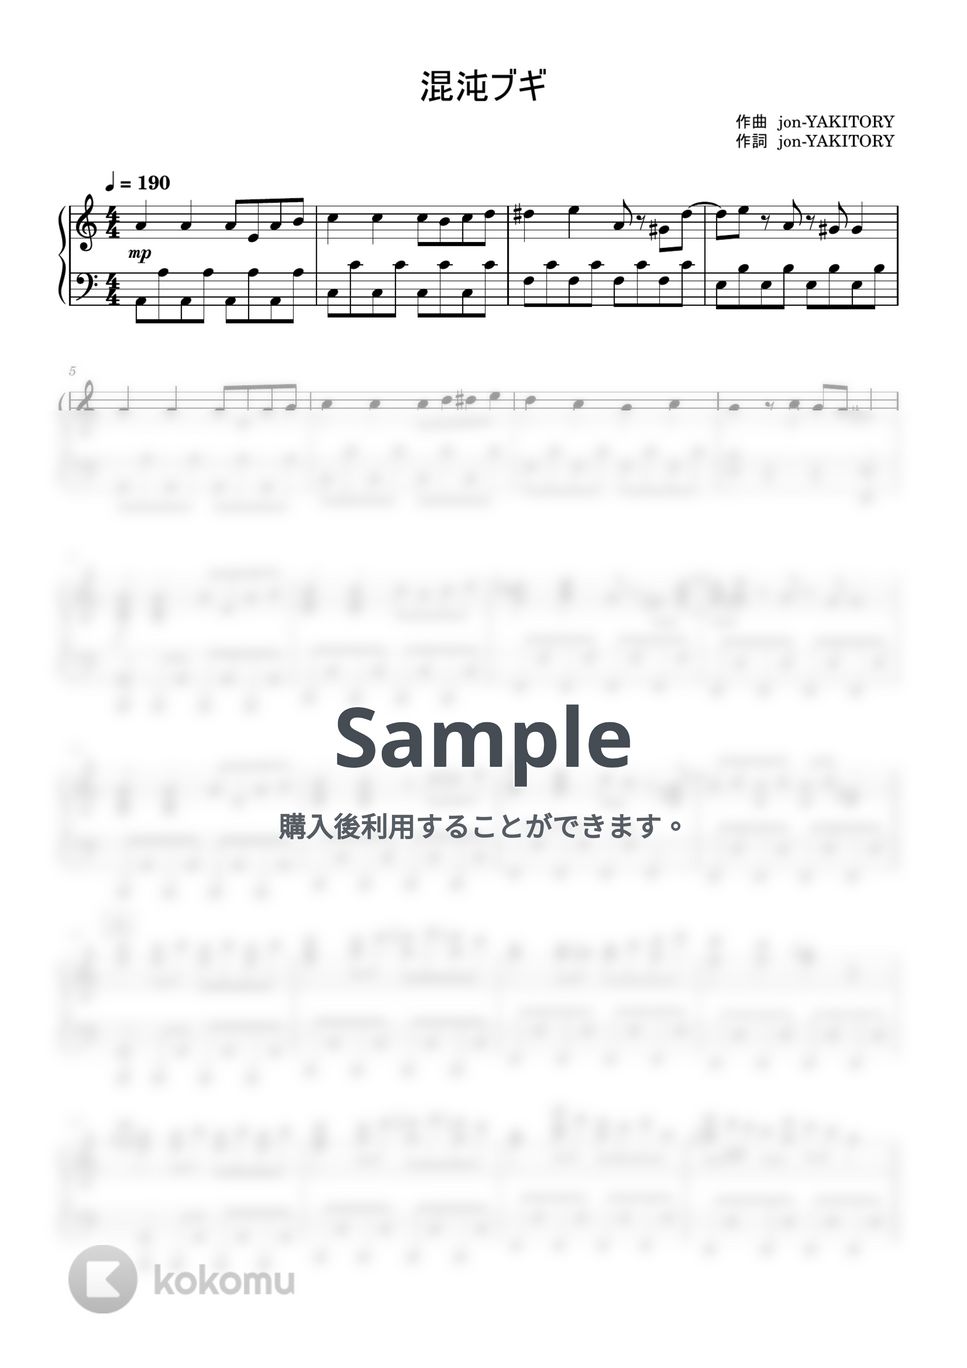 jon-YAKITORY - 混沌ブギ (ピアノソロ / 上級) by Taz